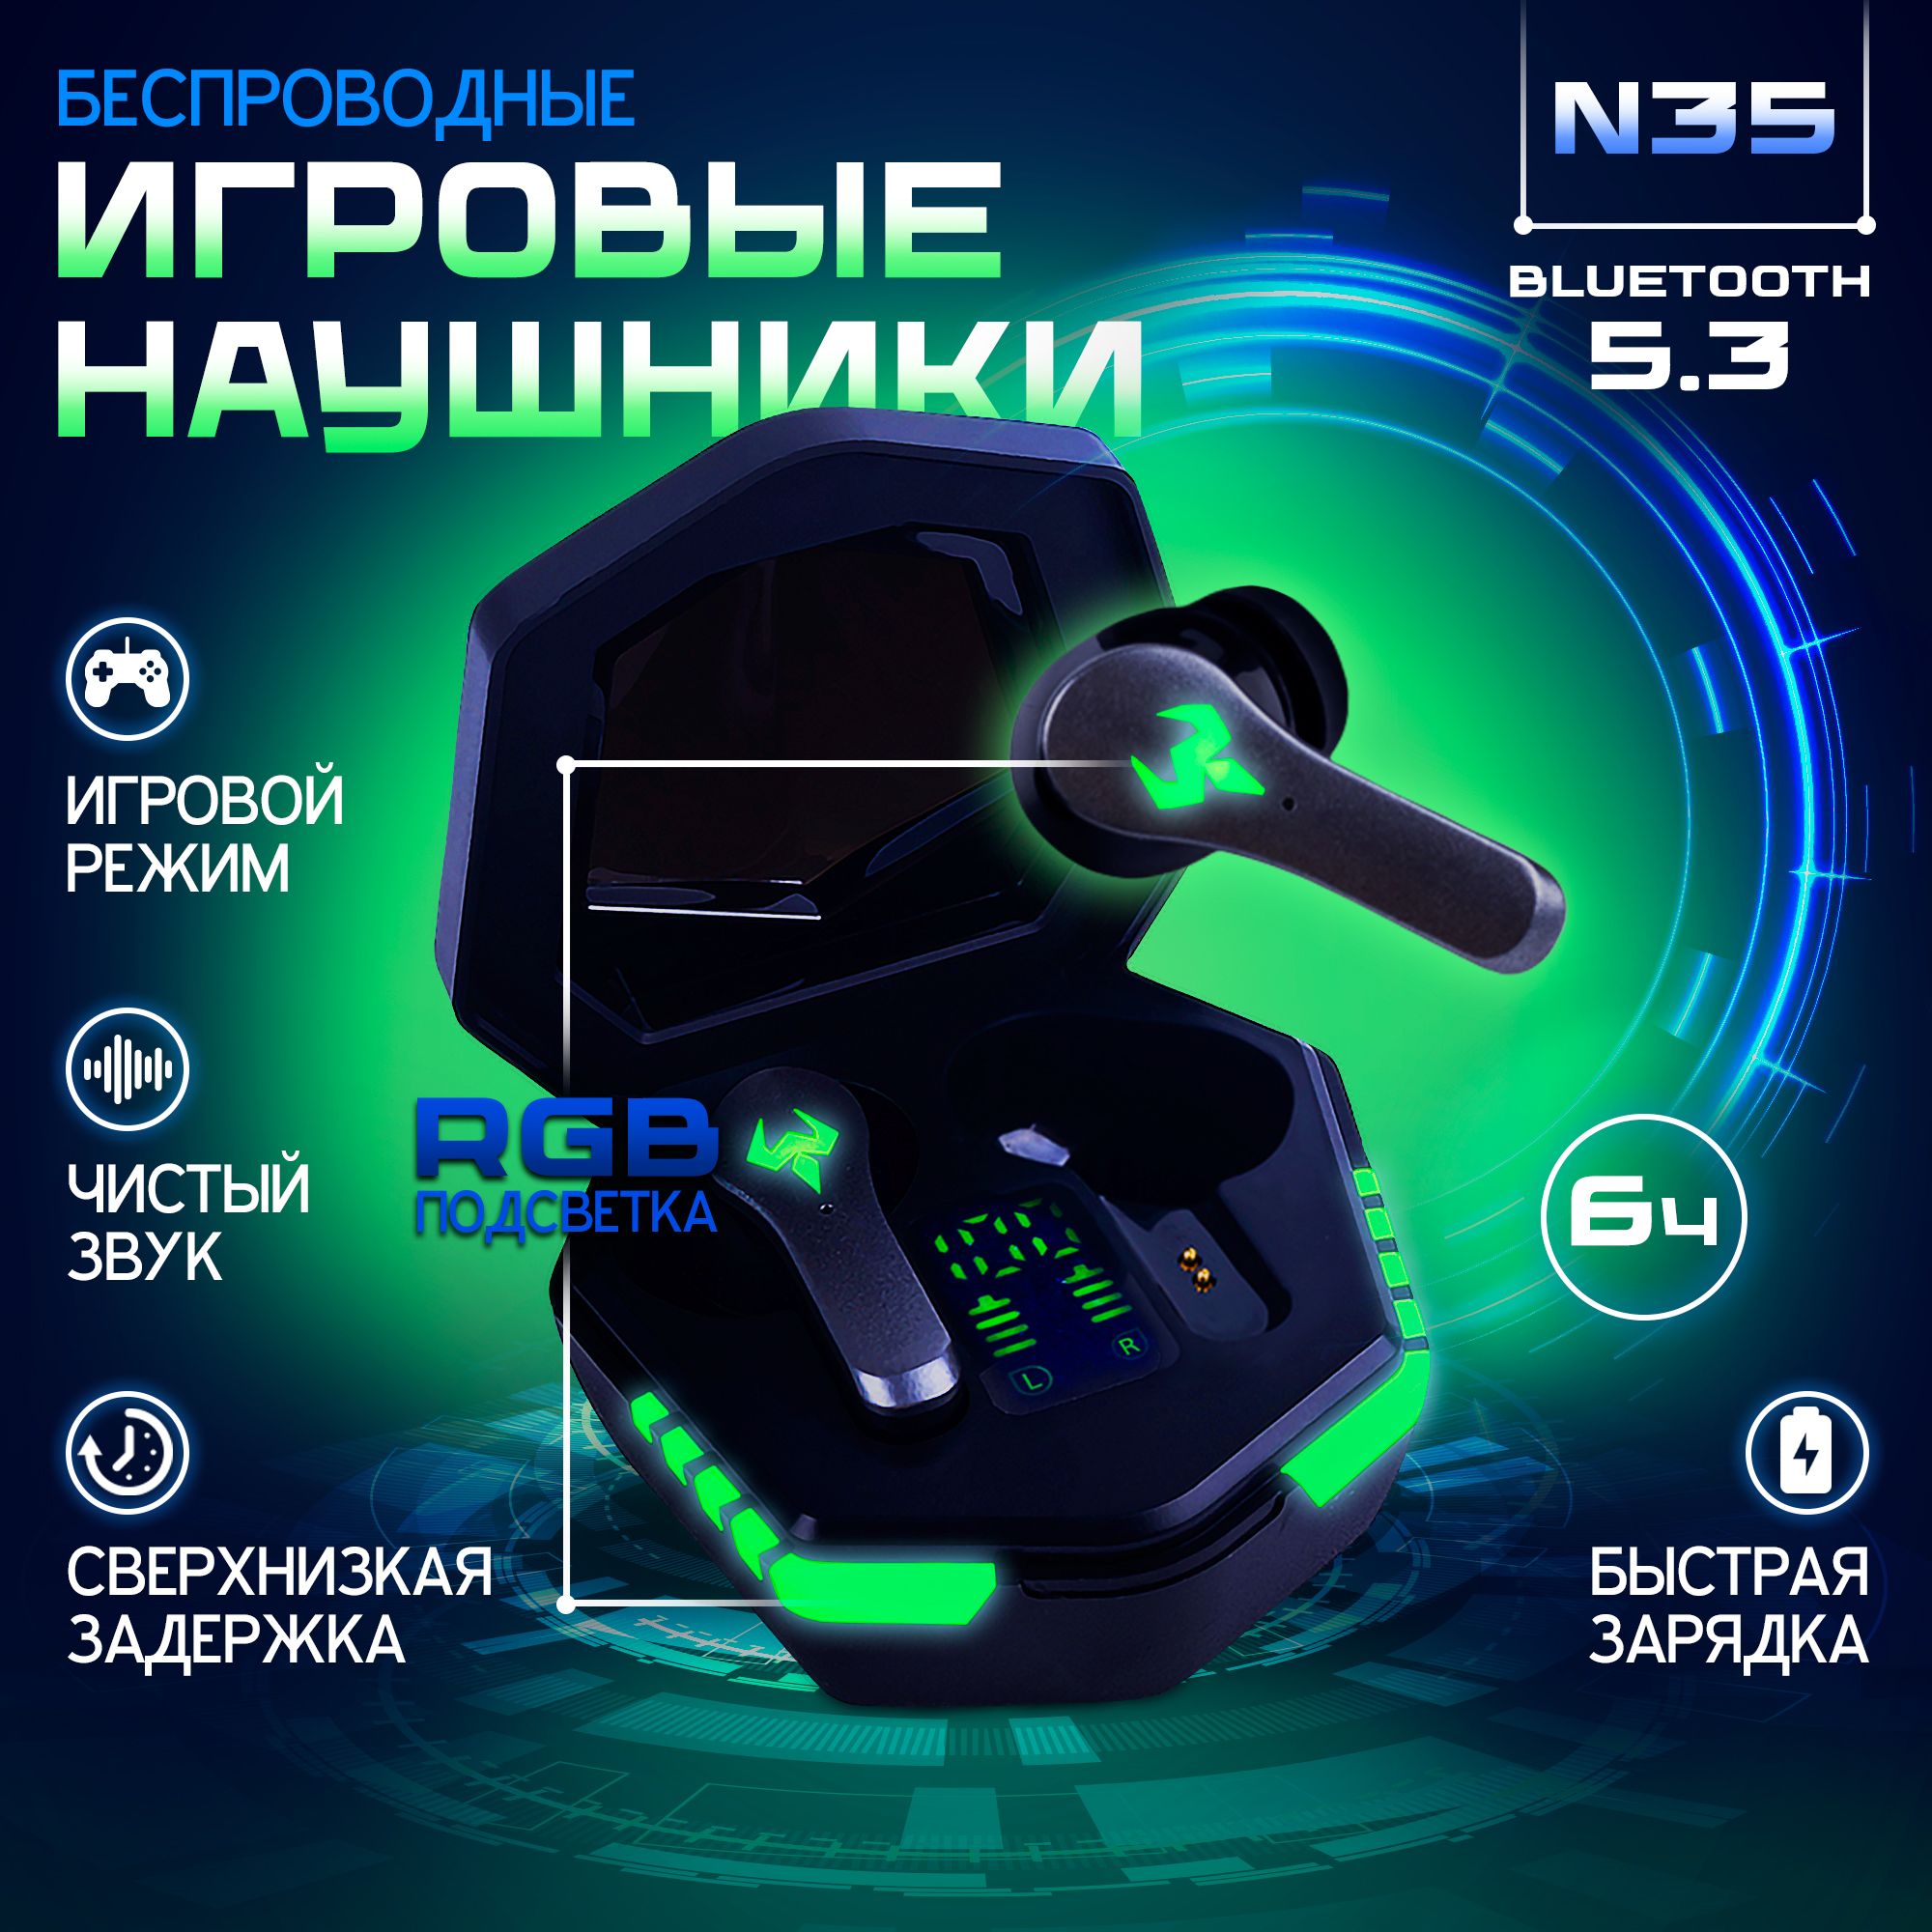 НаушникибеспроводныеигровыеN35сподсветкойицифровыминдикаторомзарядадлякаждогонаушника,Bluetooth5.3;HDмикрофонHi-Fiзвукснизкойзадержкой;Черные